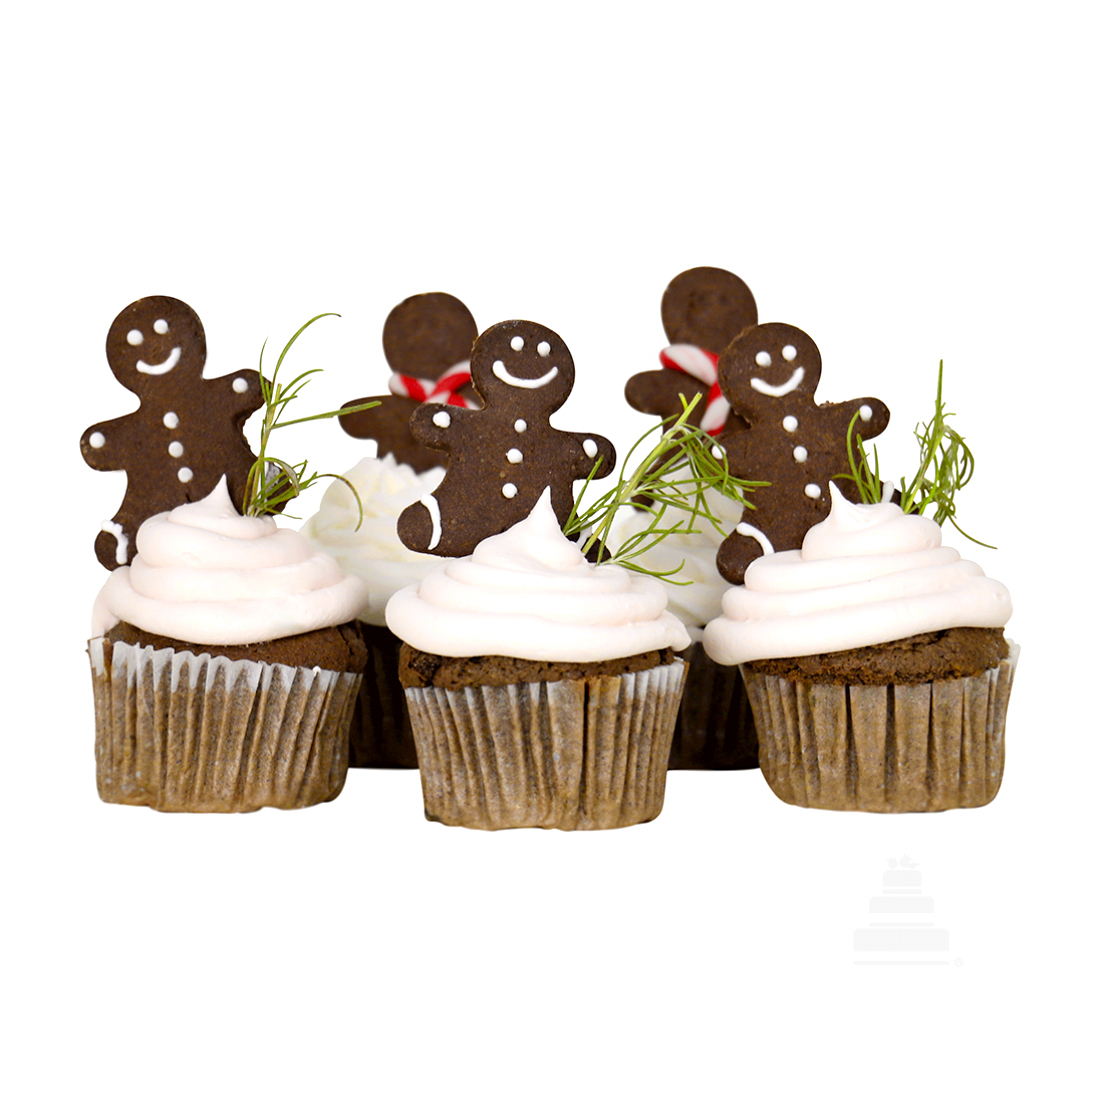 Cupcakes navideños decoragos con galleta de jengibre